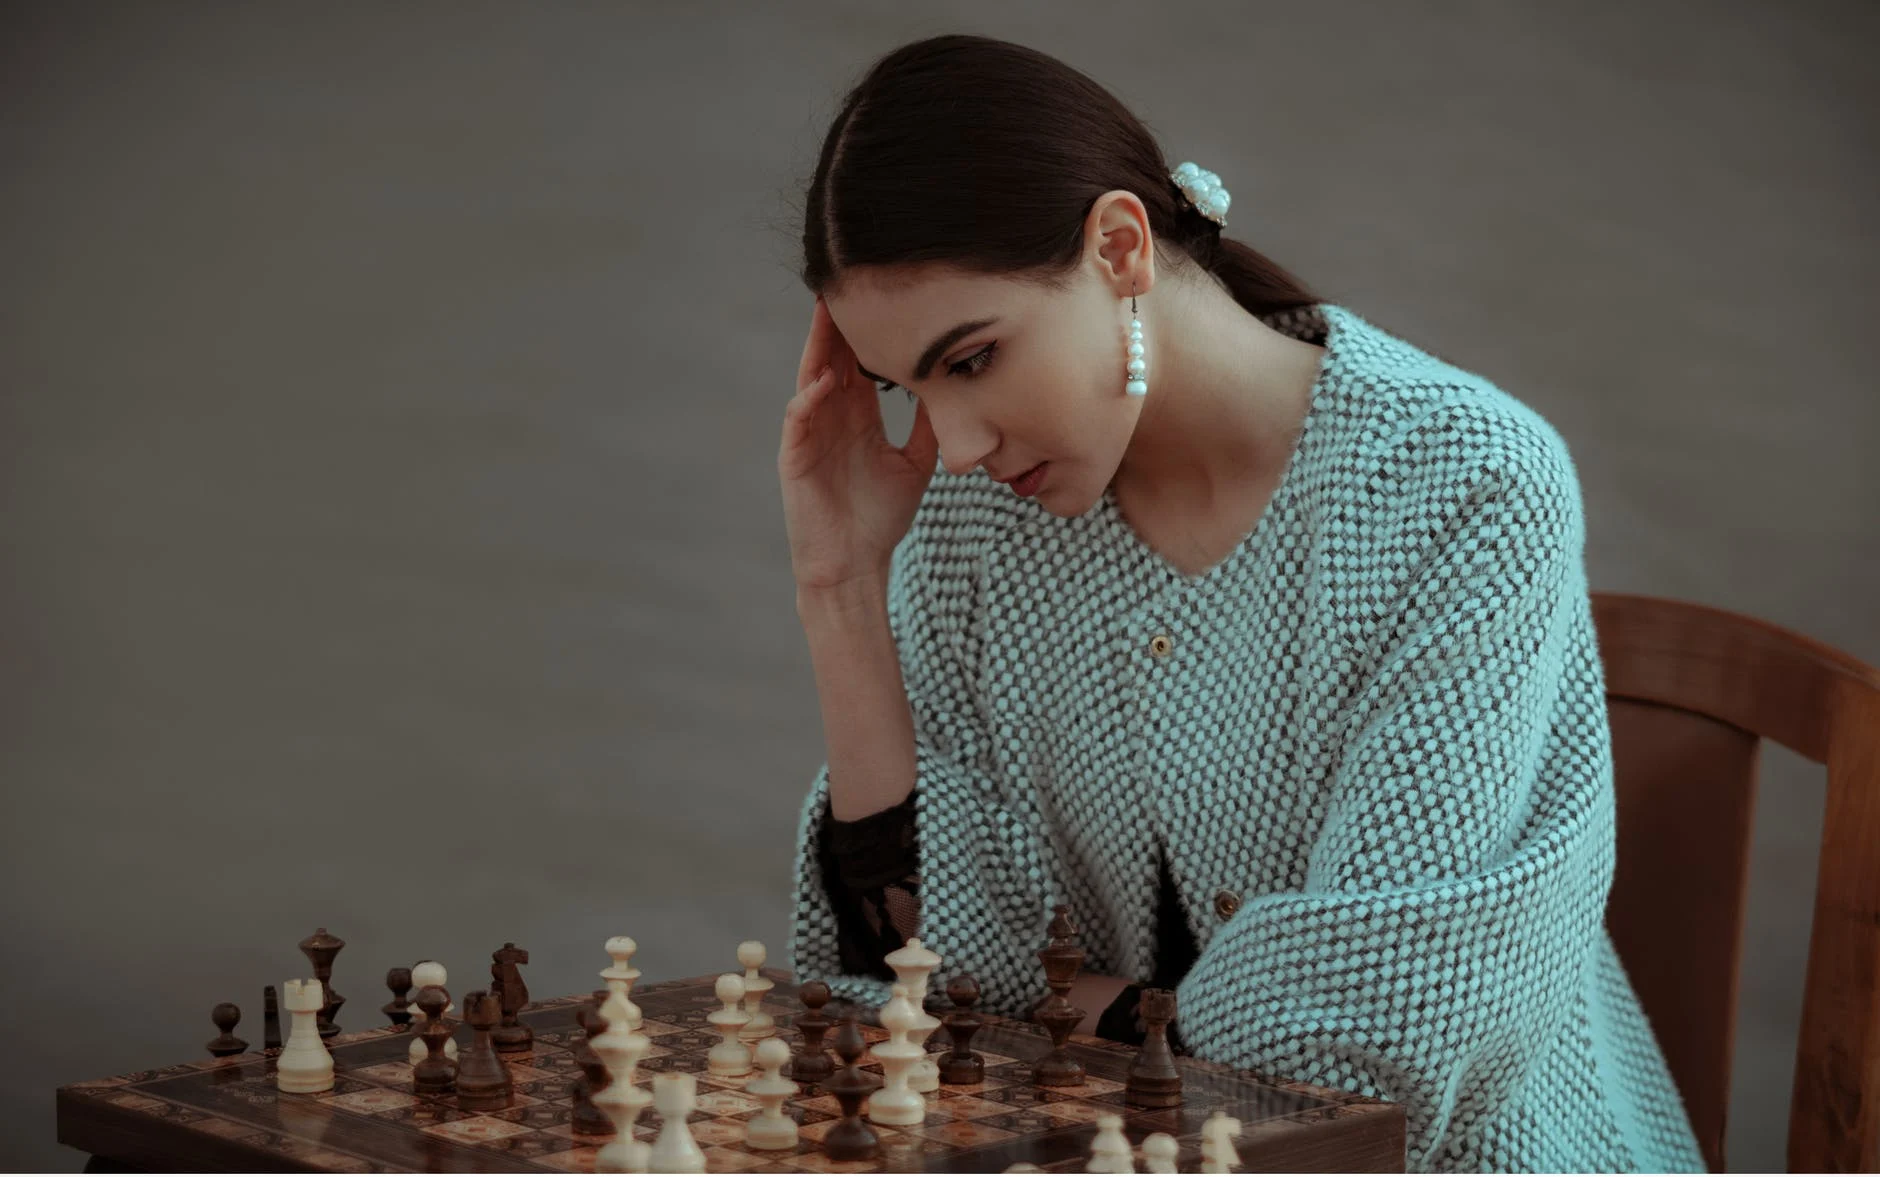 Xadrez e mulheres: o que há por trás do desequilíbrio de gênero? - Planeta